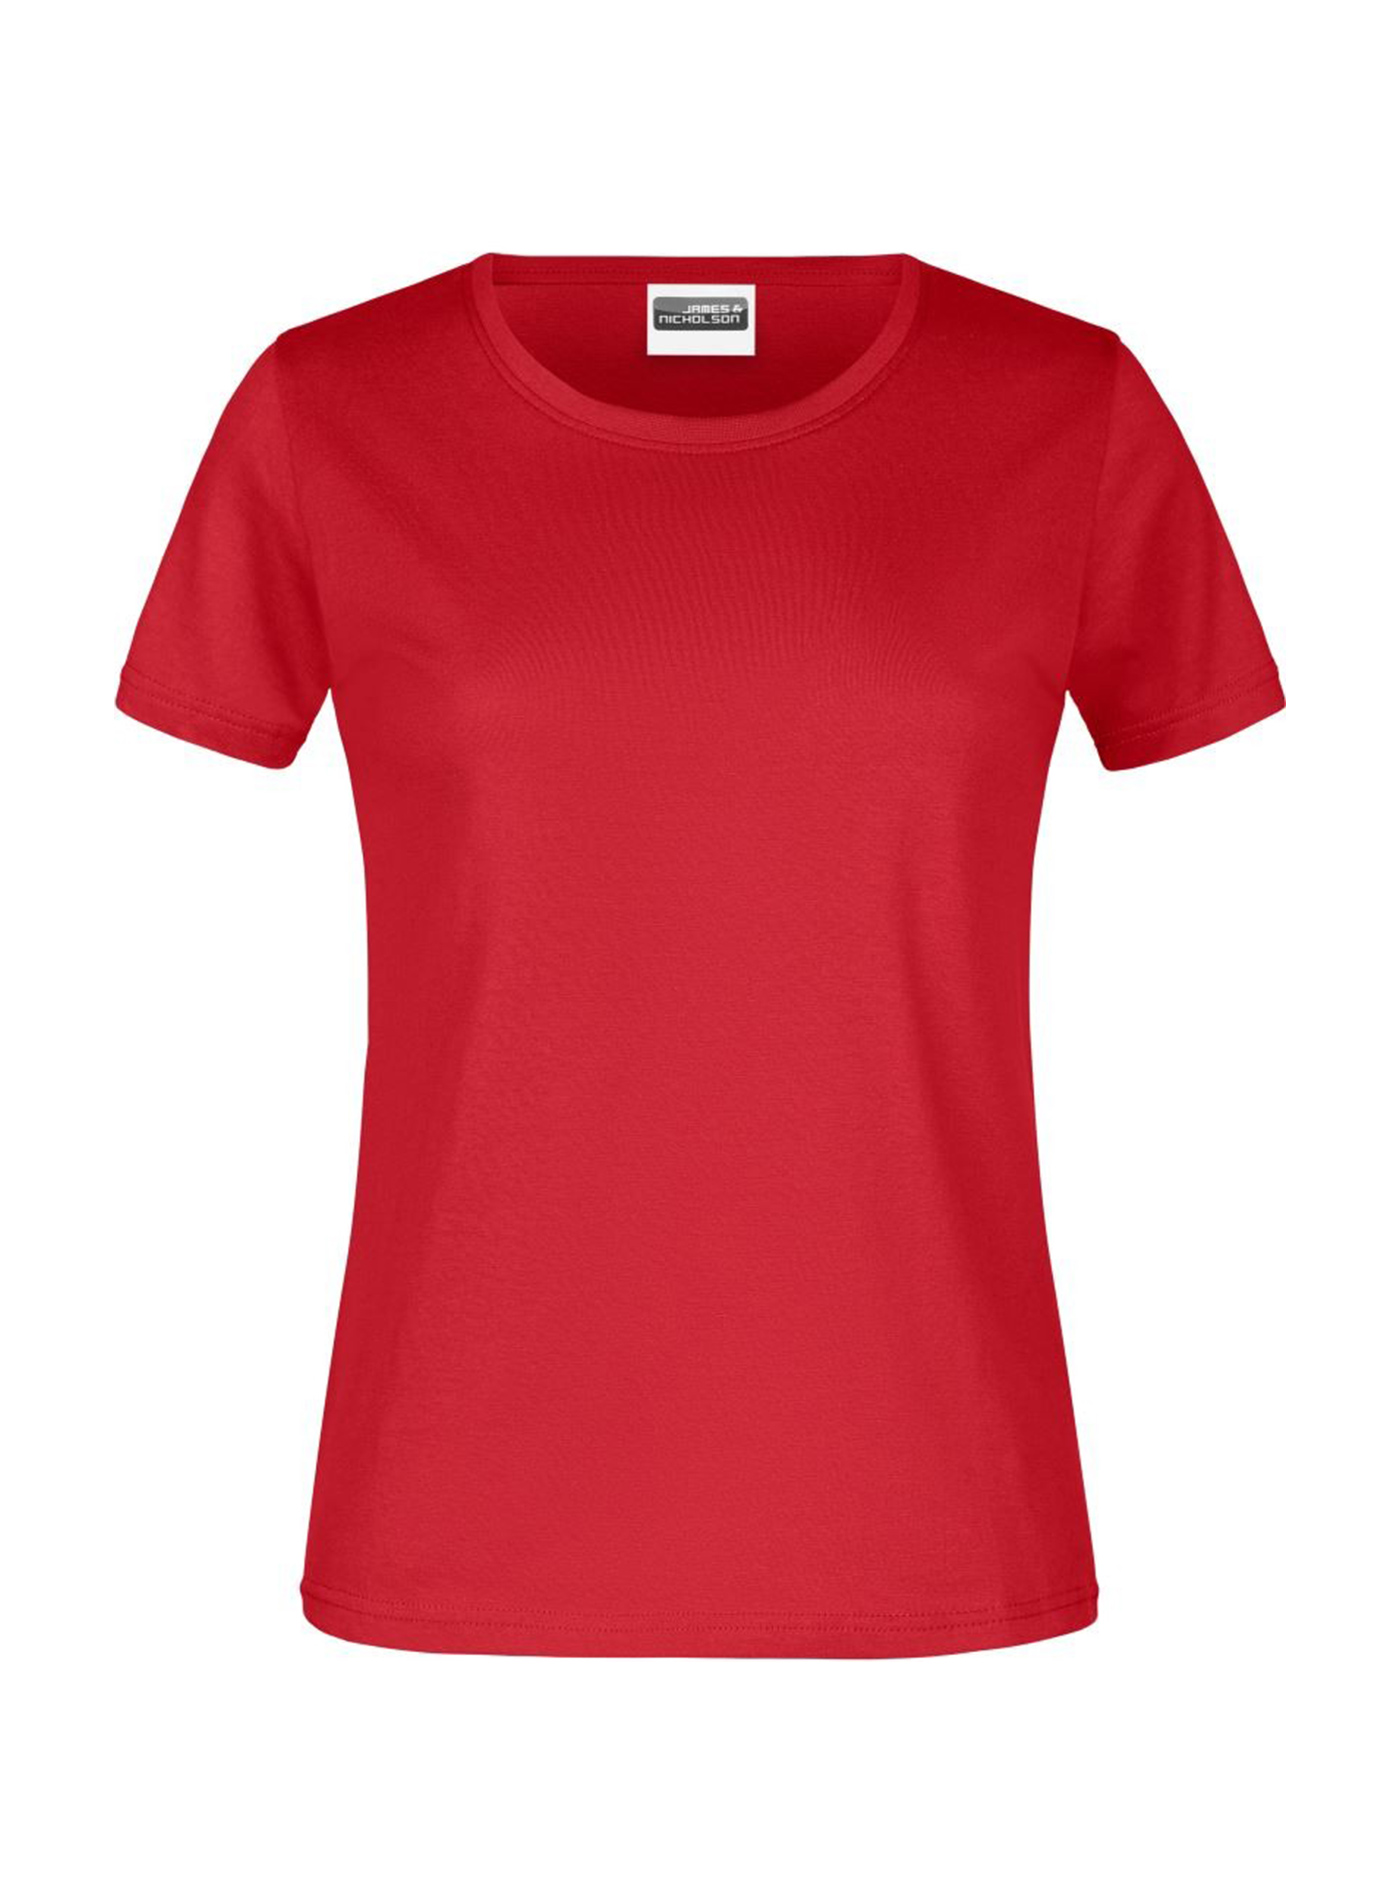 Dámské tričko James & Nicholson basic - Červená XS